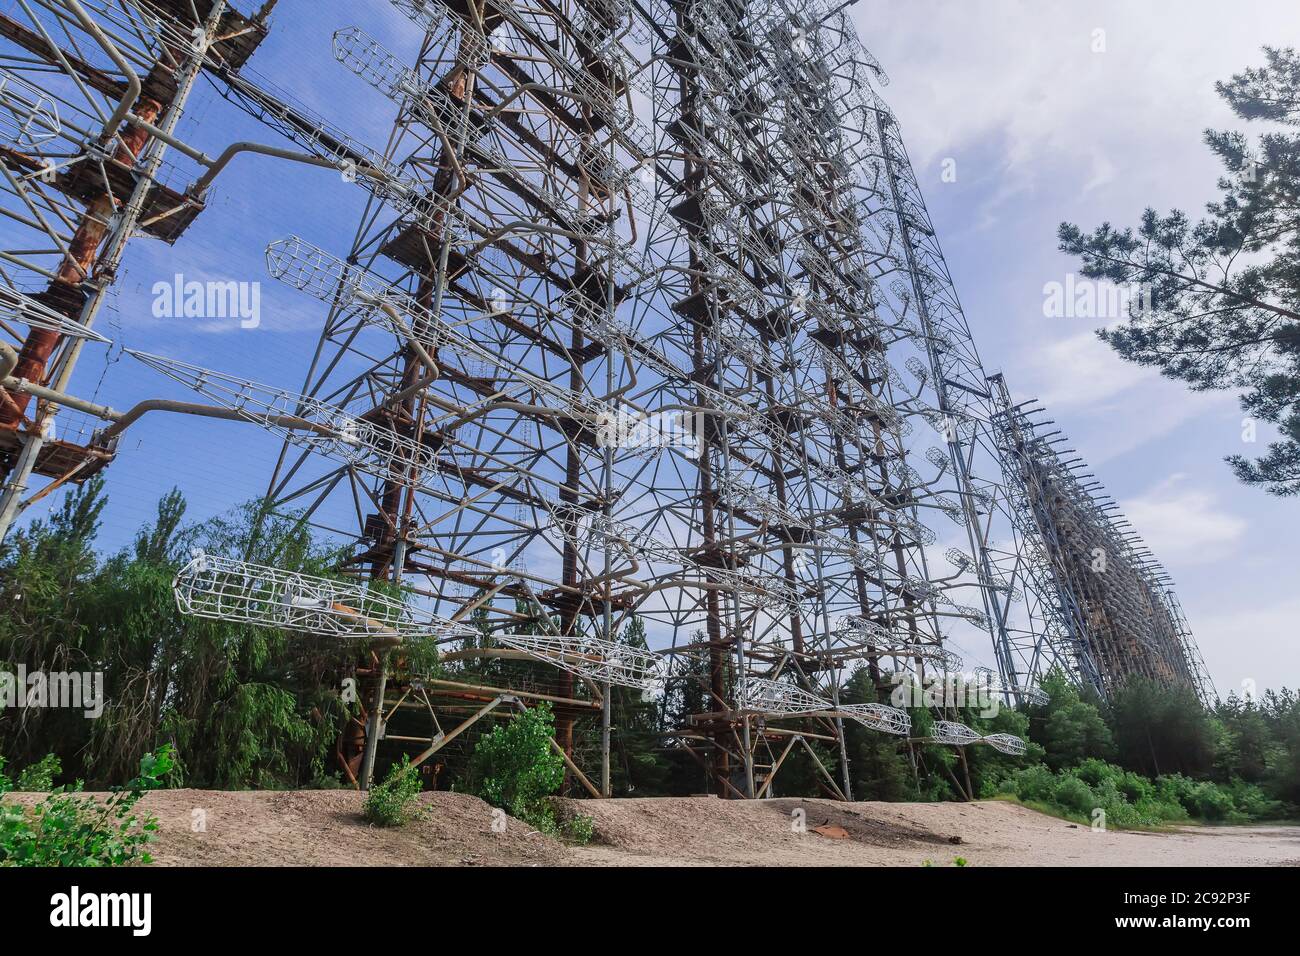 Ehemaliges militärisches Duga-Radarsystem in der Nähe der Geisterstadt Pripyat in der Tschernobyl-Ausschlusszone, Ukraine Stockfoto